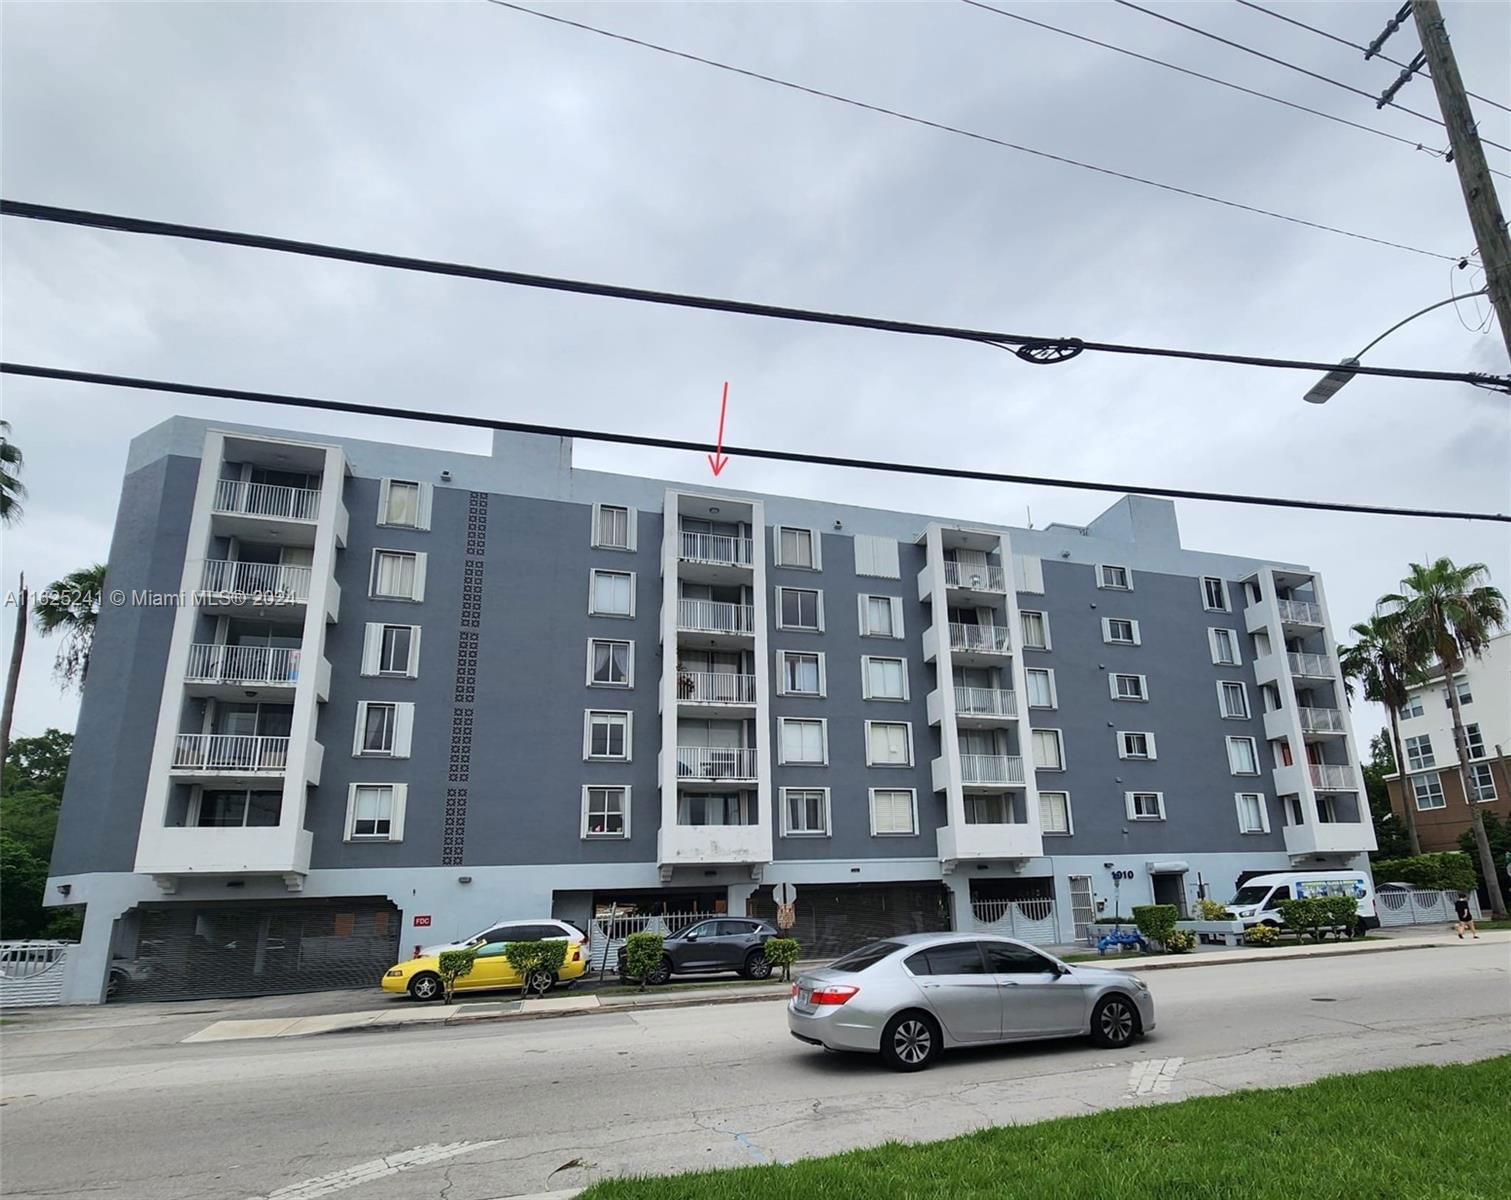 Real estate property located at 1010 11th St #606, Miami-Dade County, ARAGON PLAZA CONDO, Miami, FL